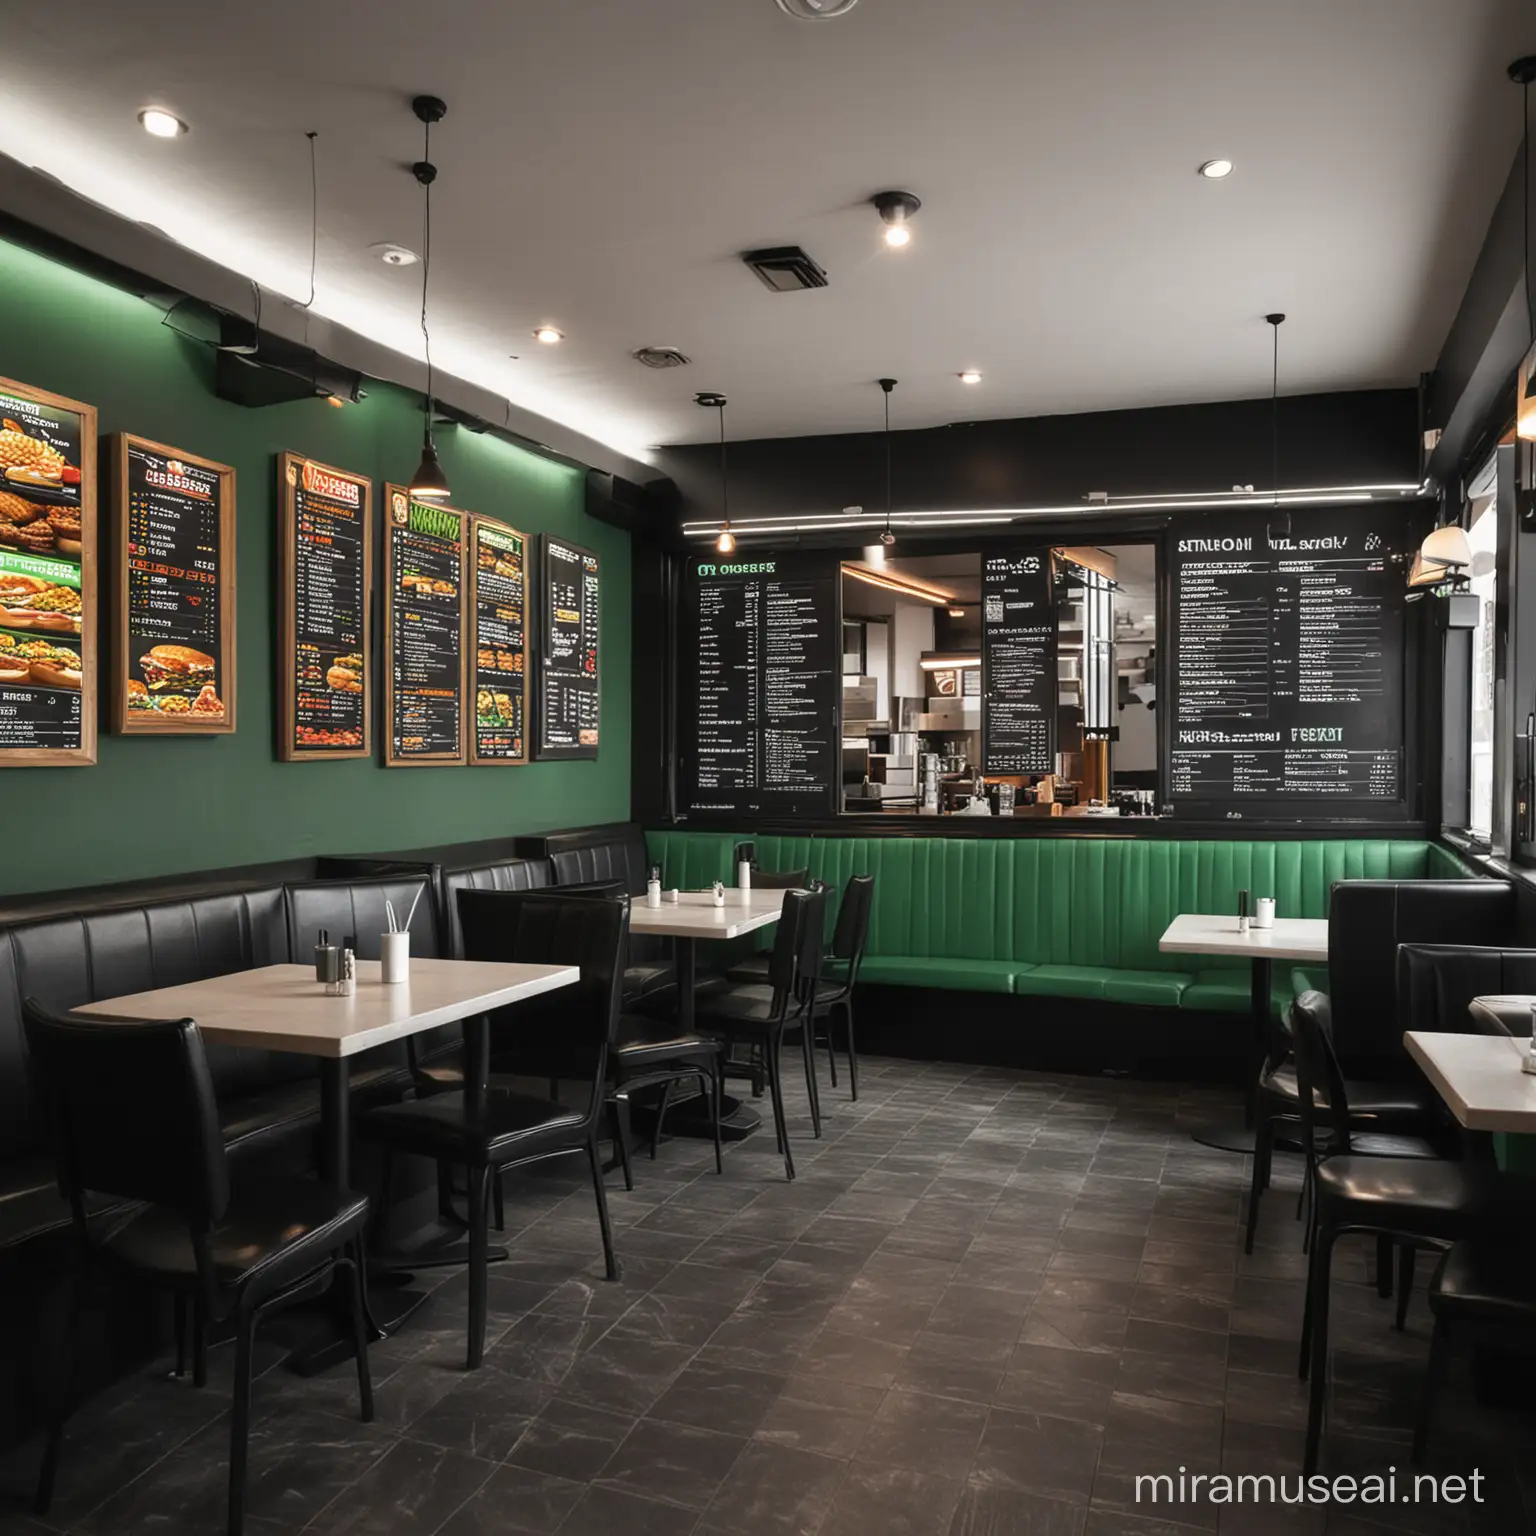 Interior restaurante comida rapida en negro y verde